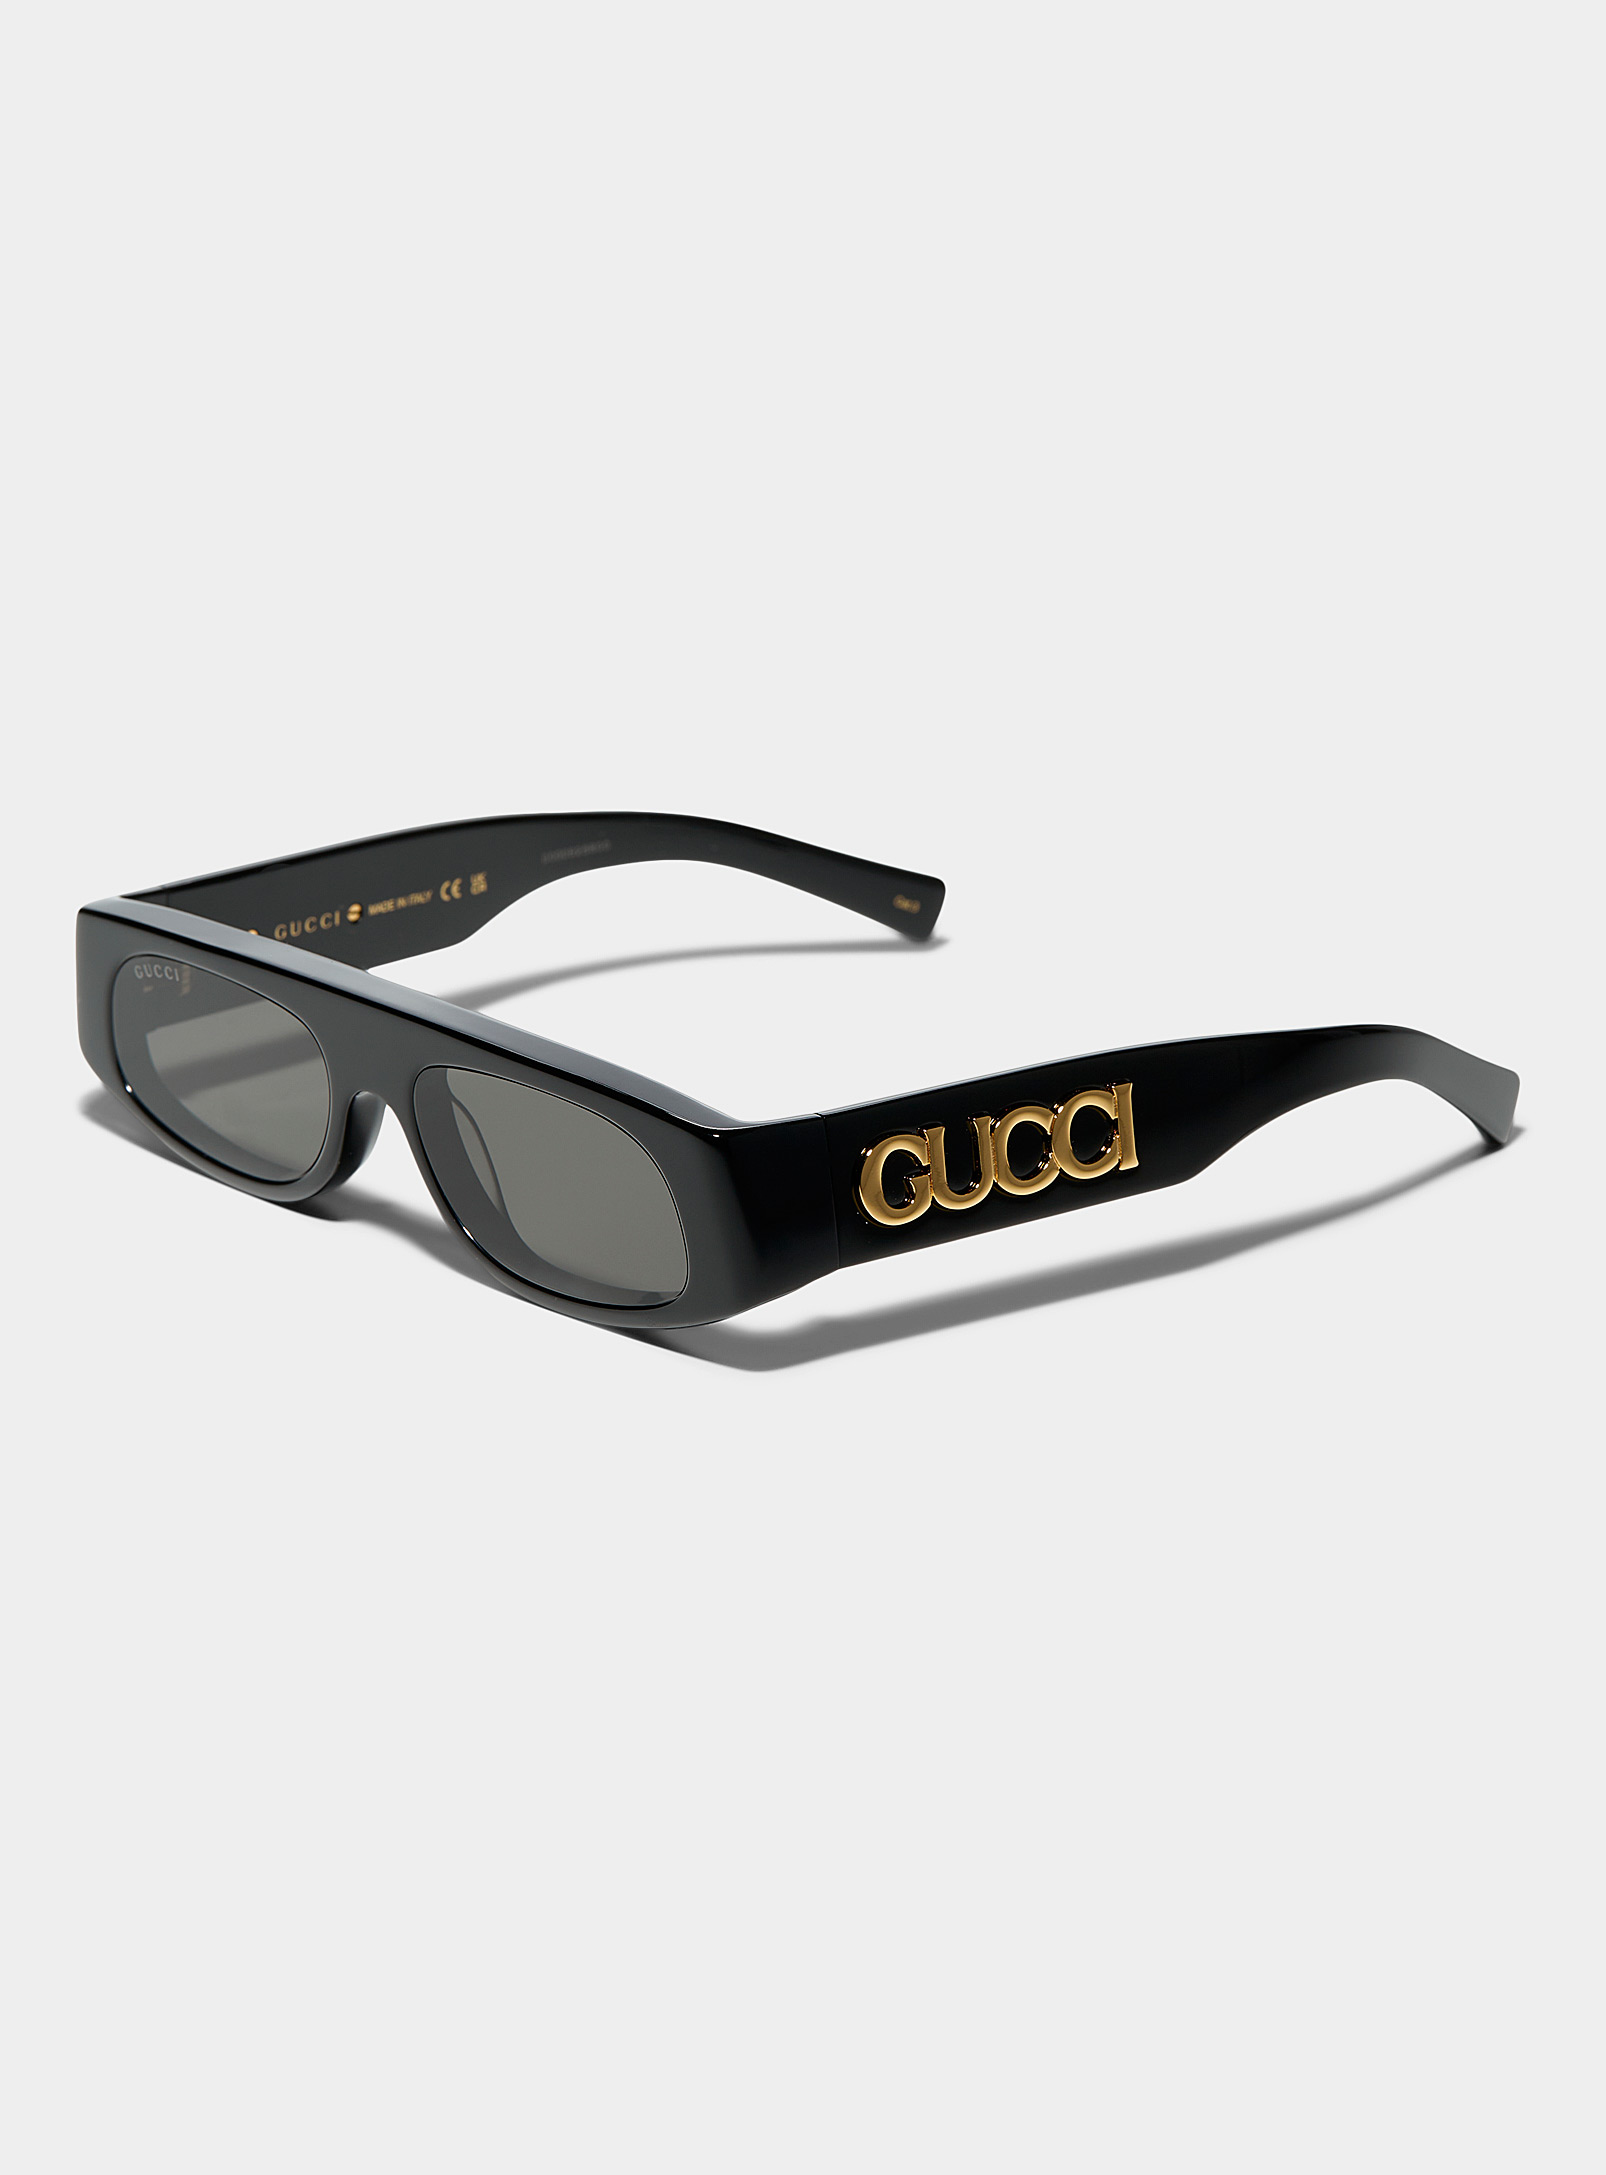 Gucci - Les lunettes de soleil anguleuses signature dorée